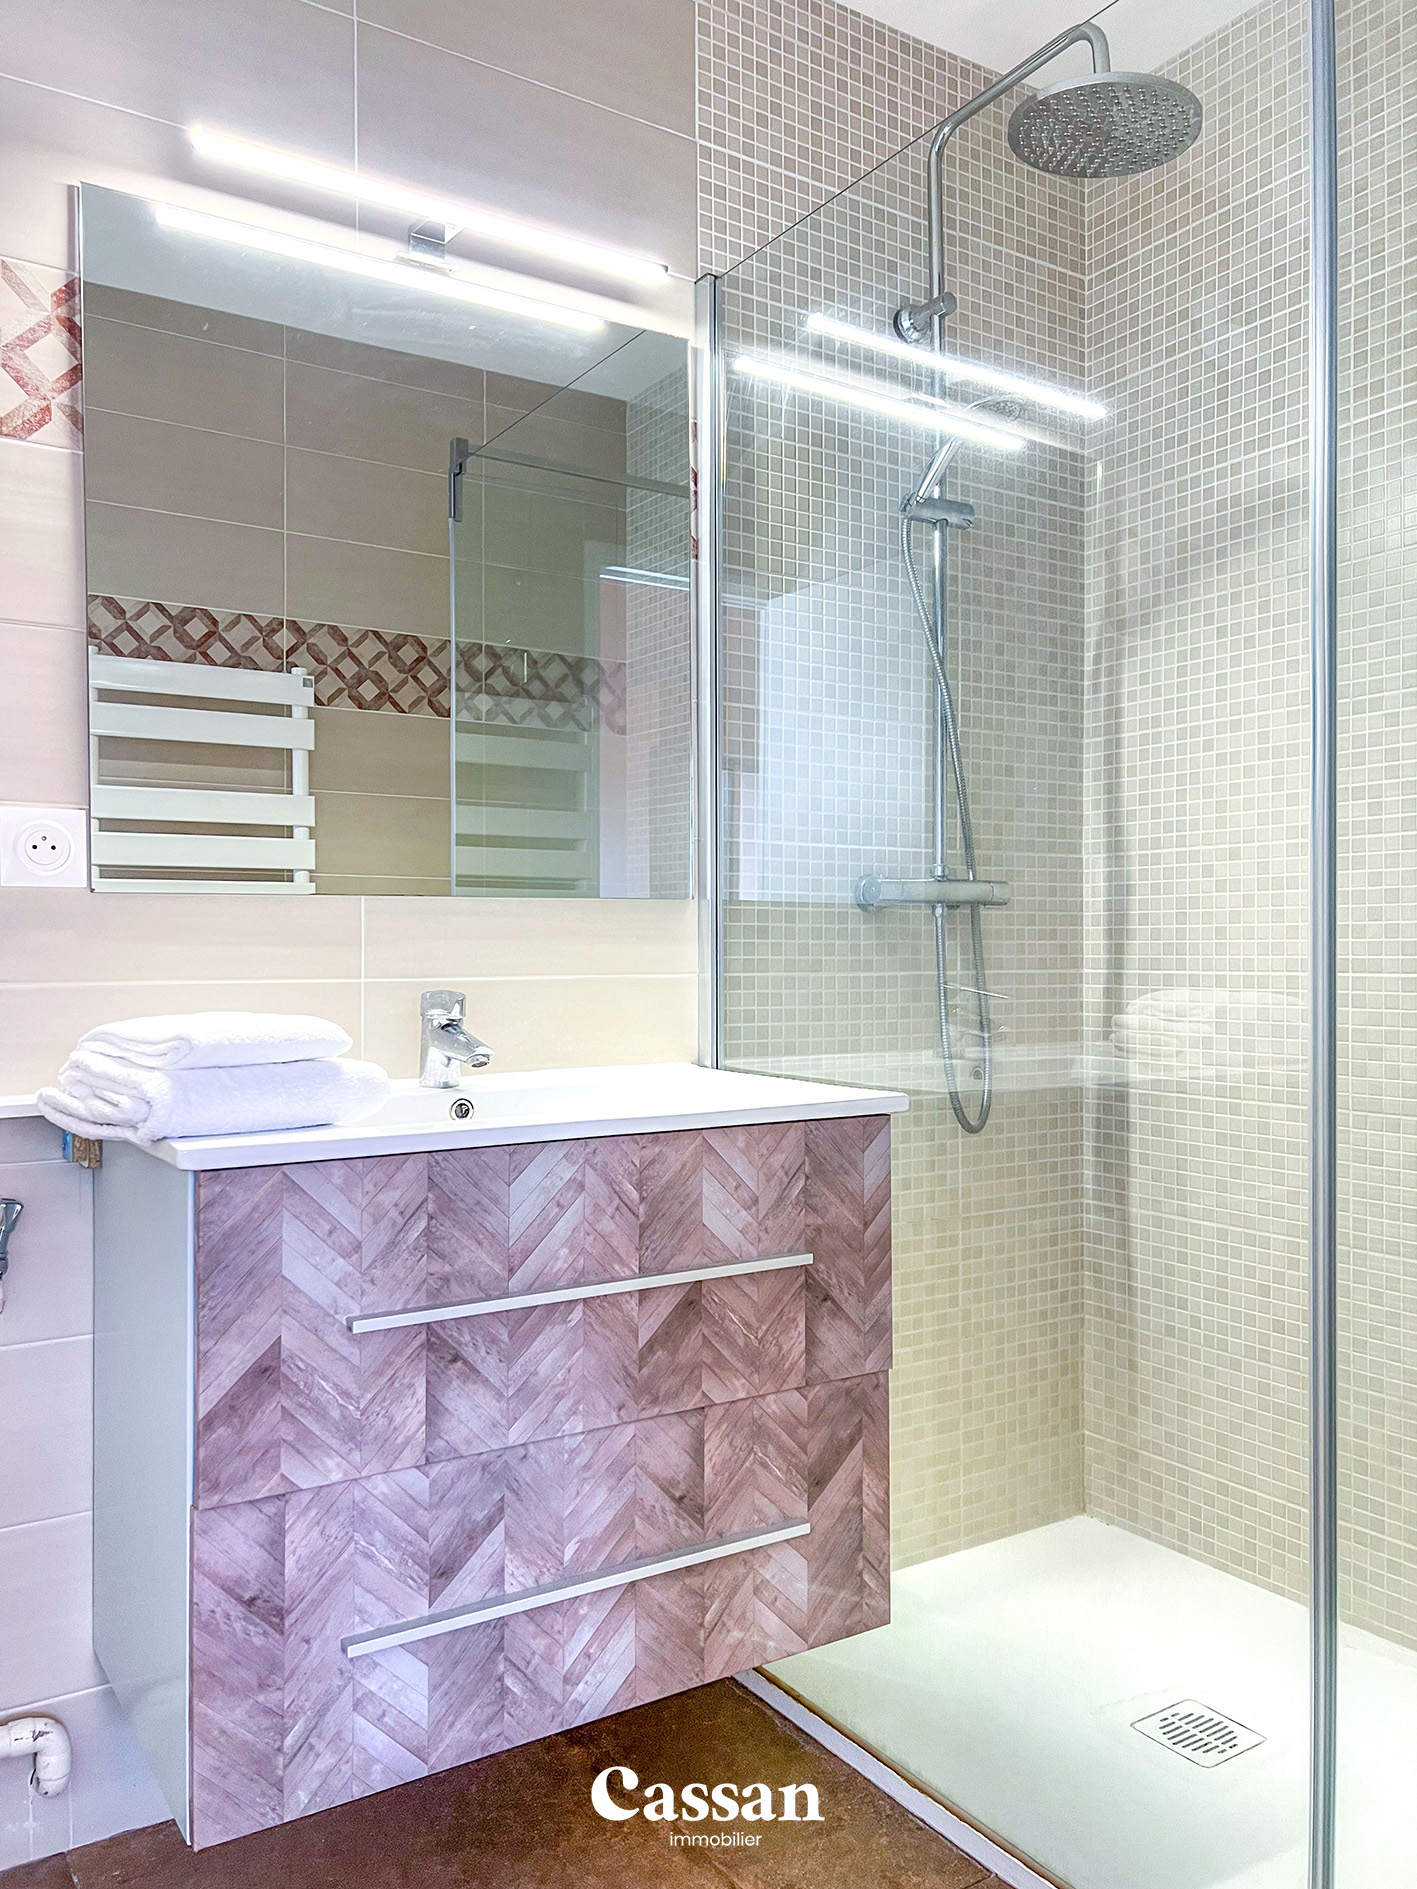 Salle de bain appartement à vendre Aurillac Cassan immobilier